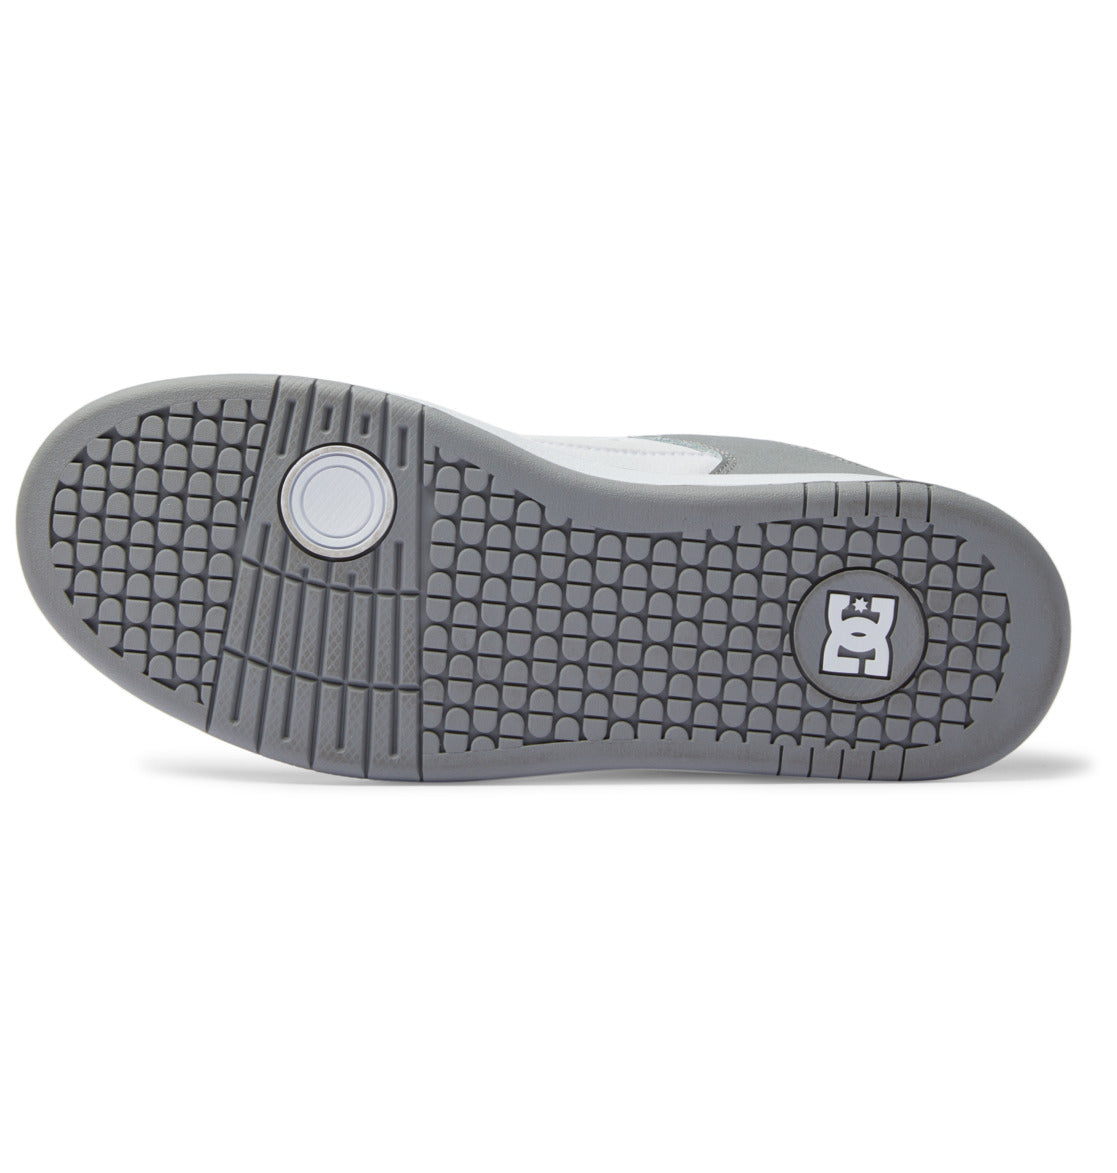 Zapatilla de skate Dc Shoes Manteca 4 - White Grey